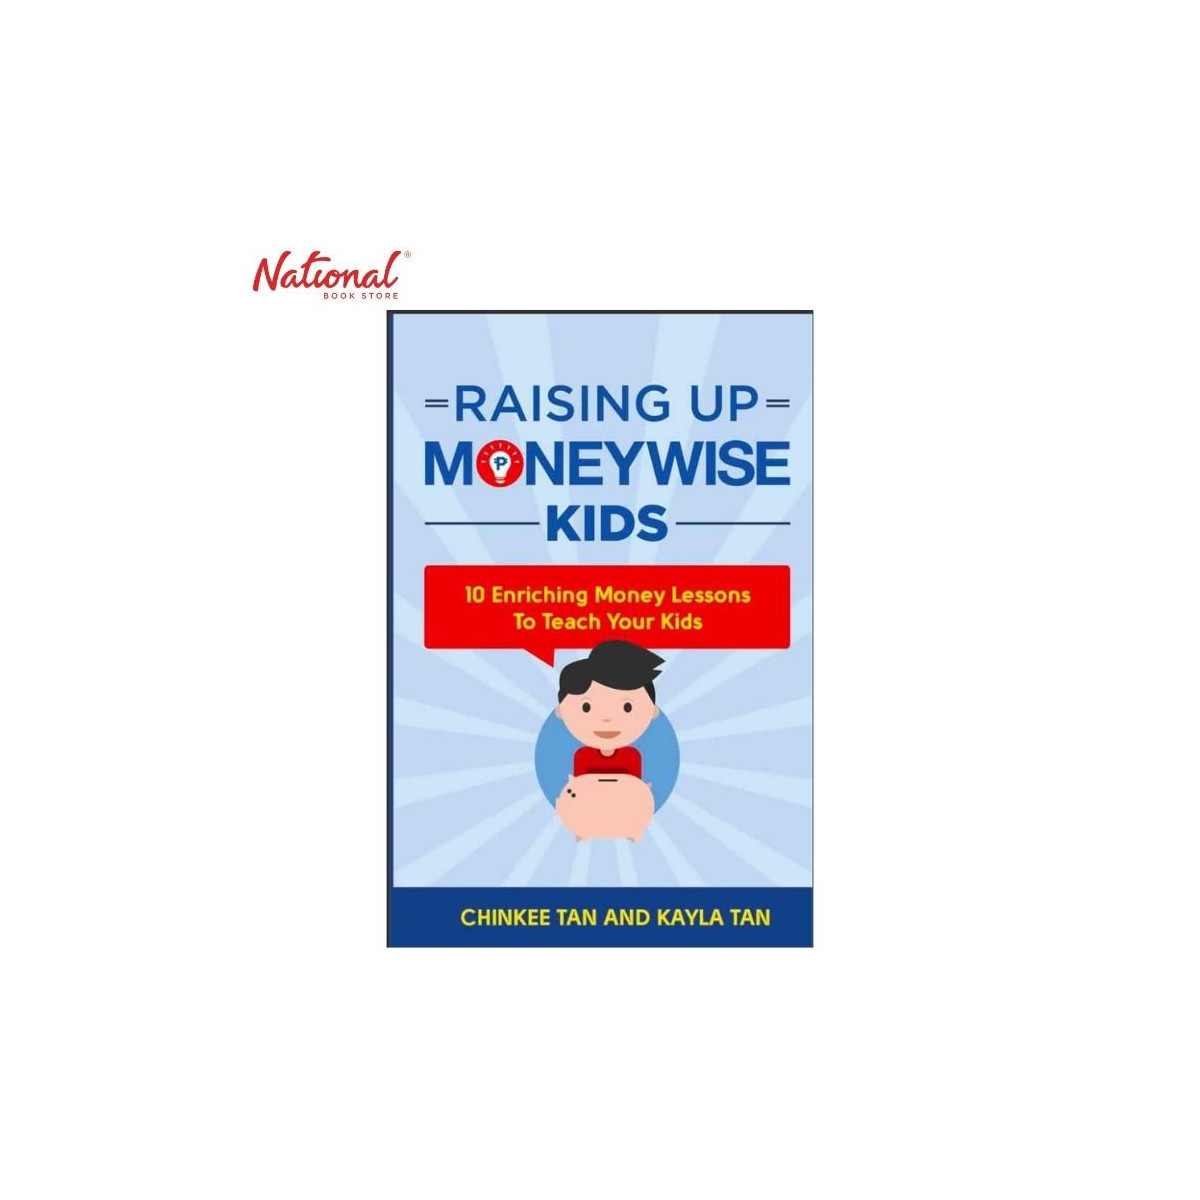 Raising Up Moneywise Kids Trade Paperback by Chinkee Tan